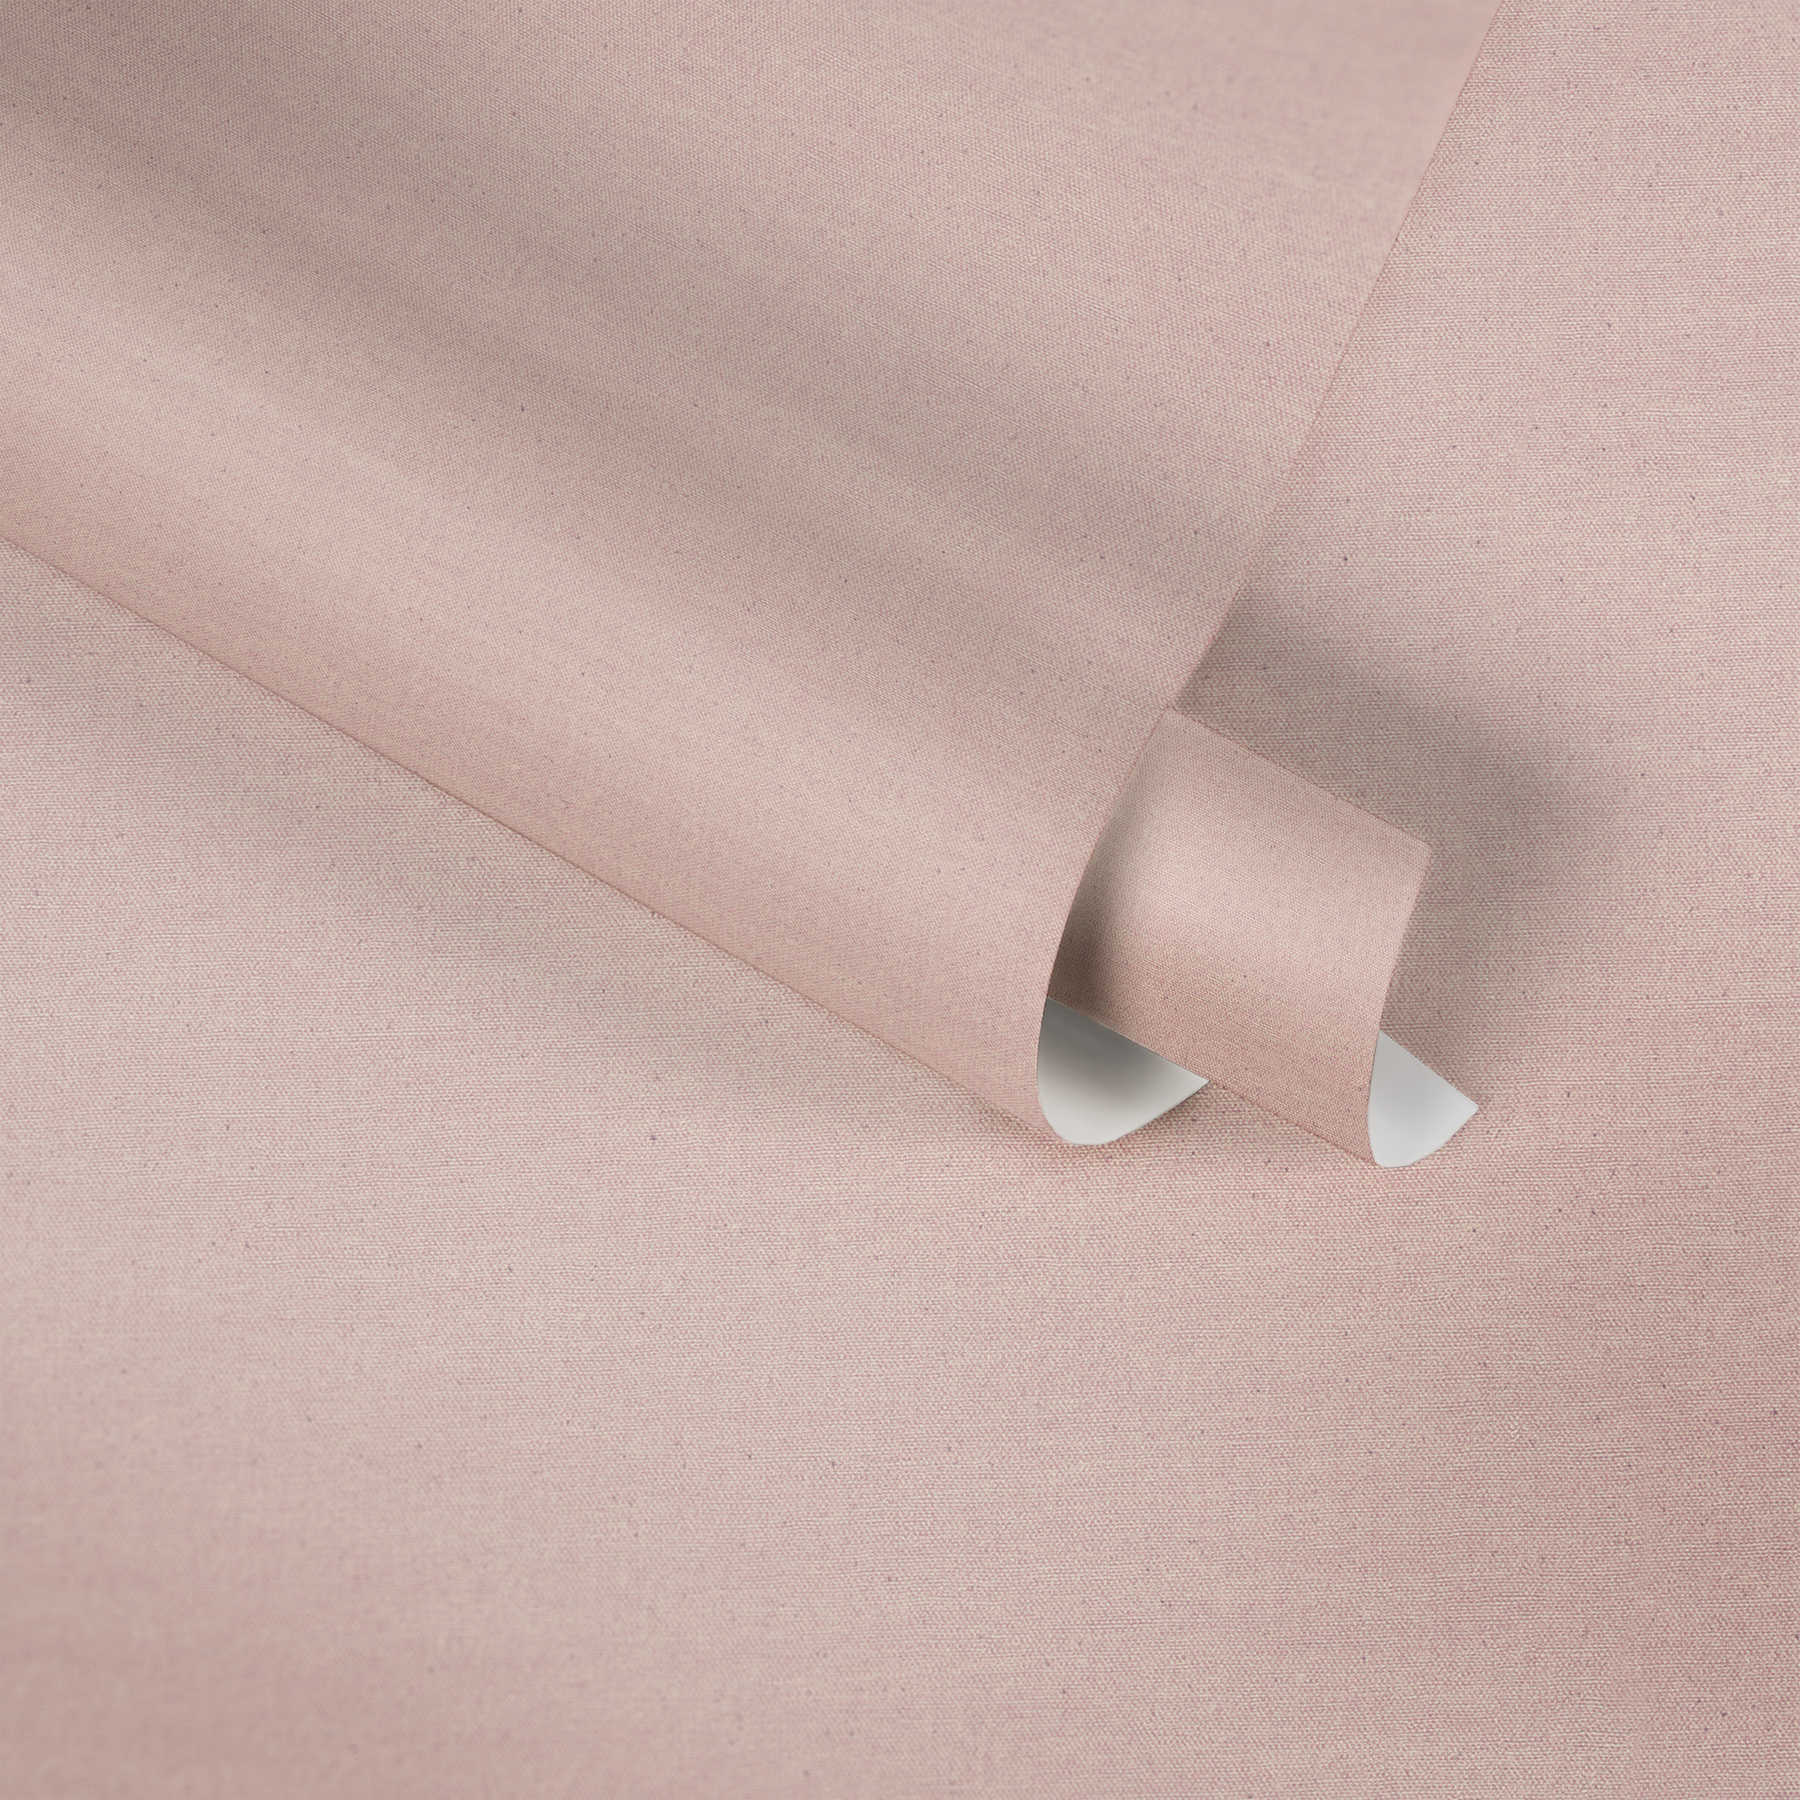             Papier peint uni rose design textile avec pois gris
        